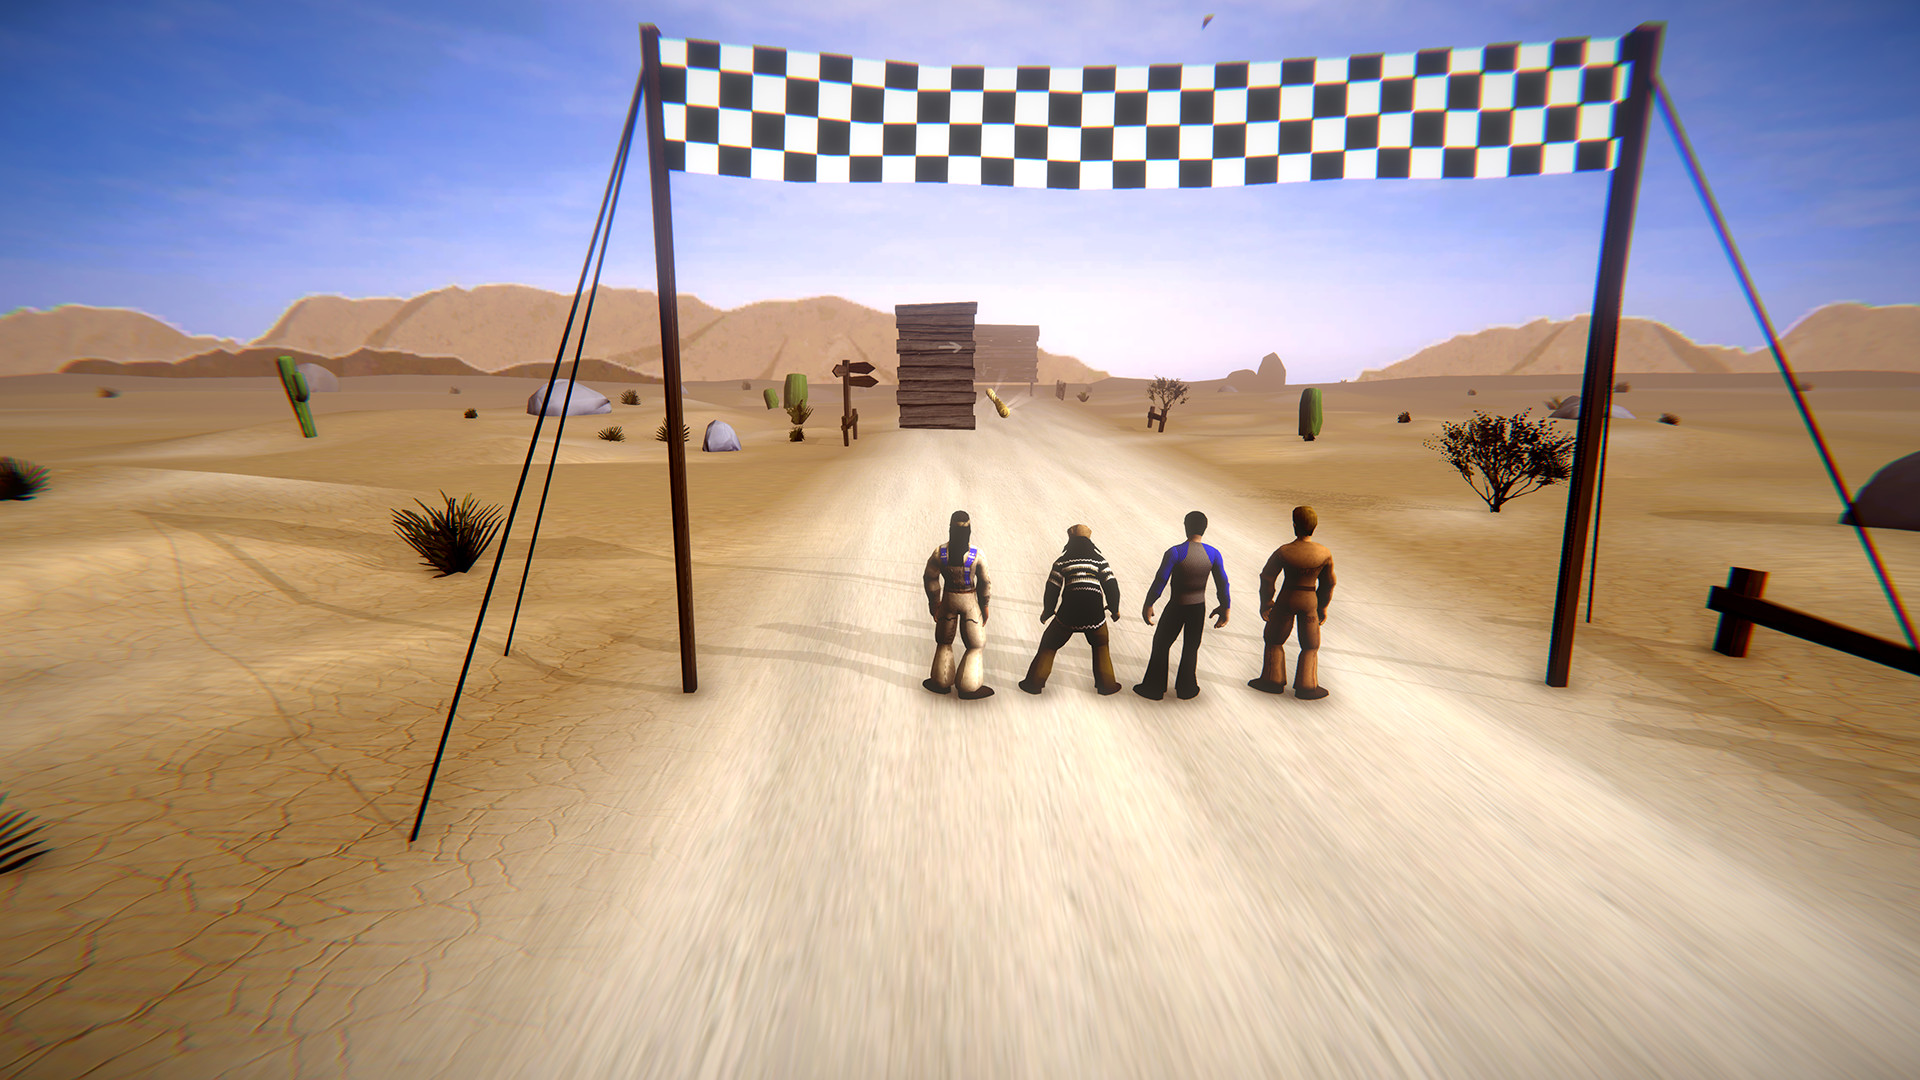 Bullyparade - DER Spiel screenshot